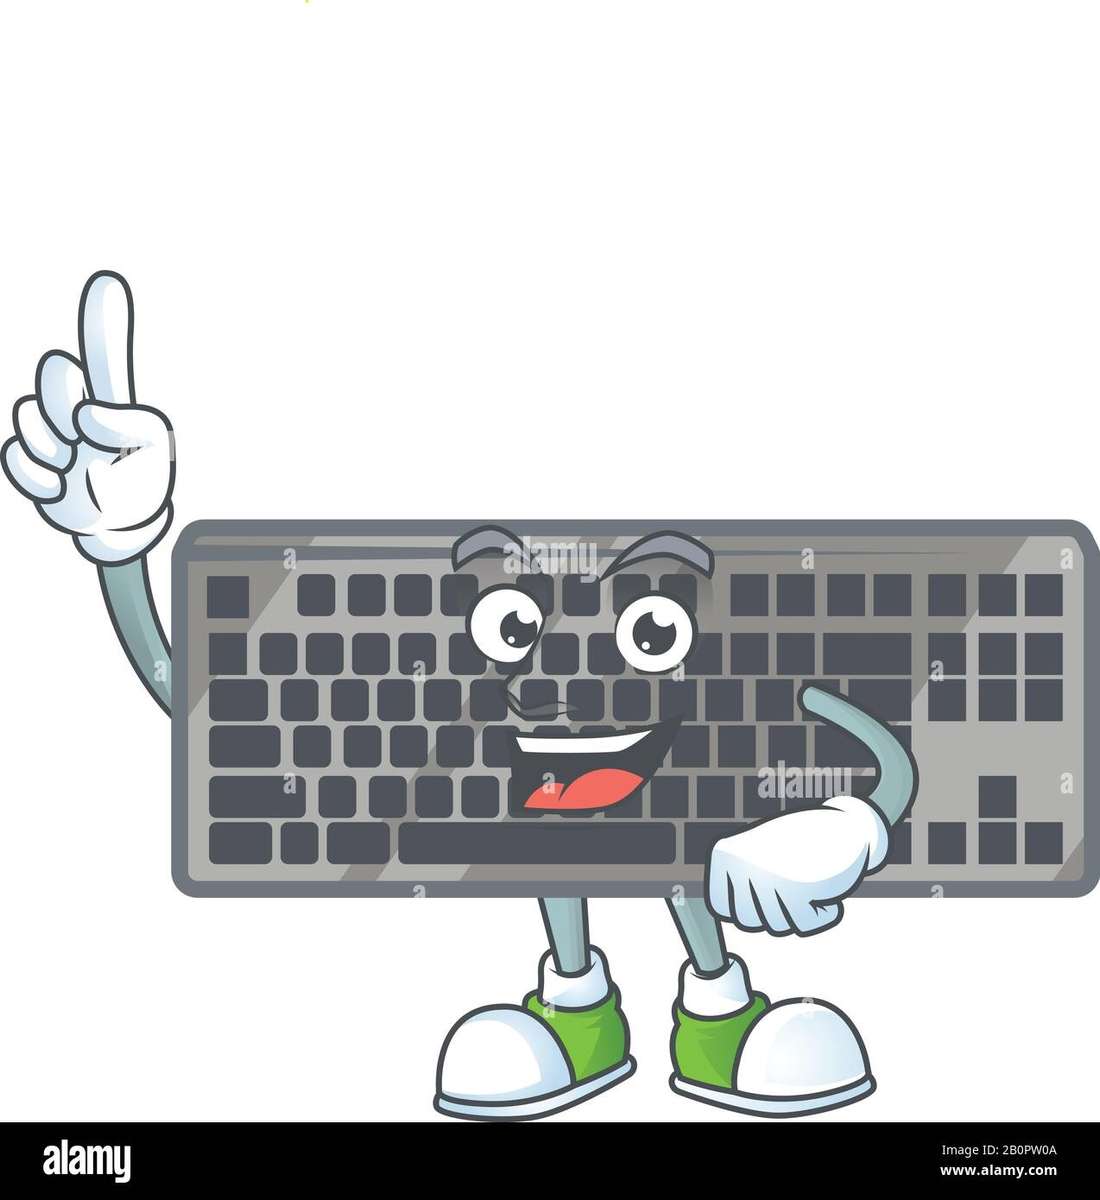 клавіатура для дитячих частин комп'ютера онлайн пазл